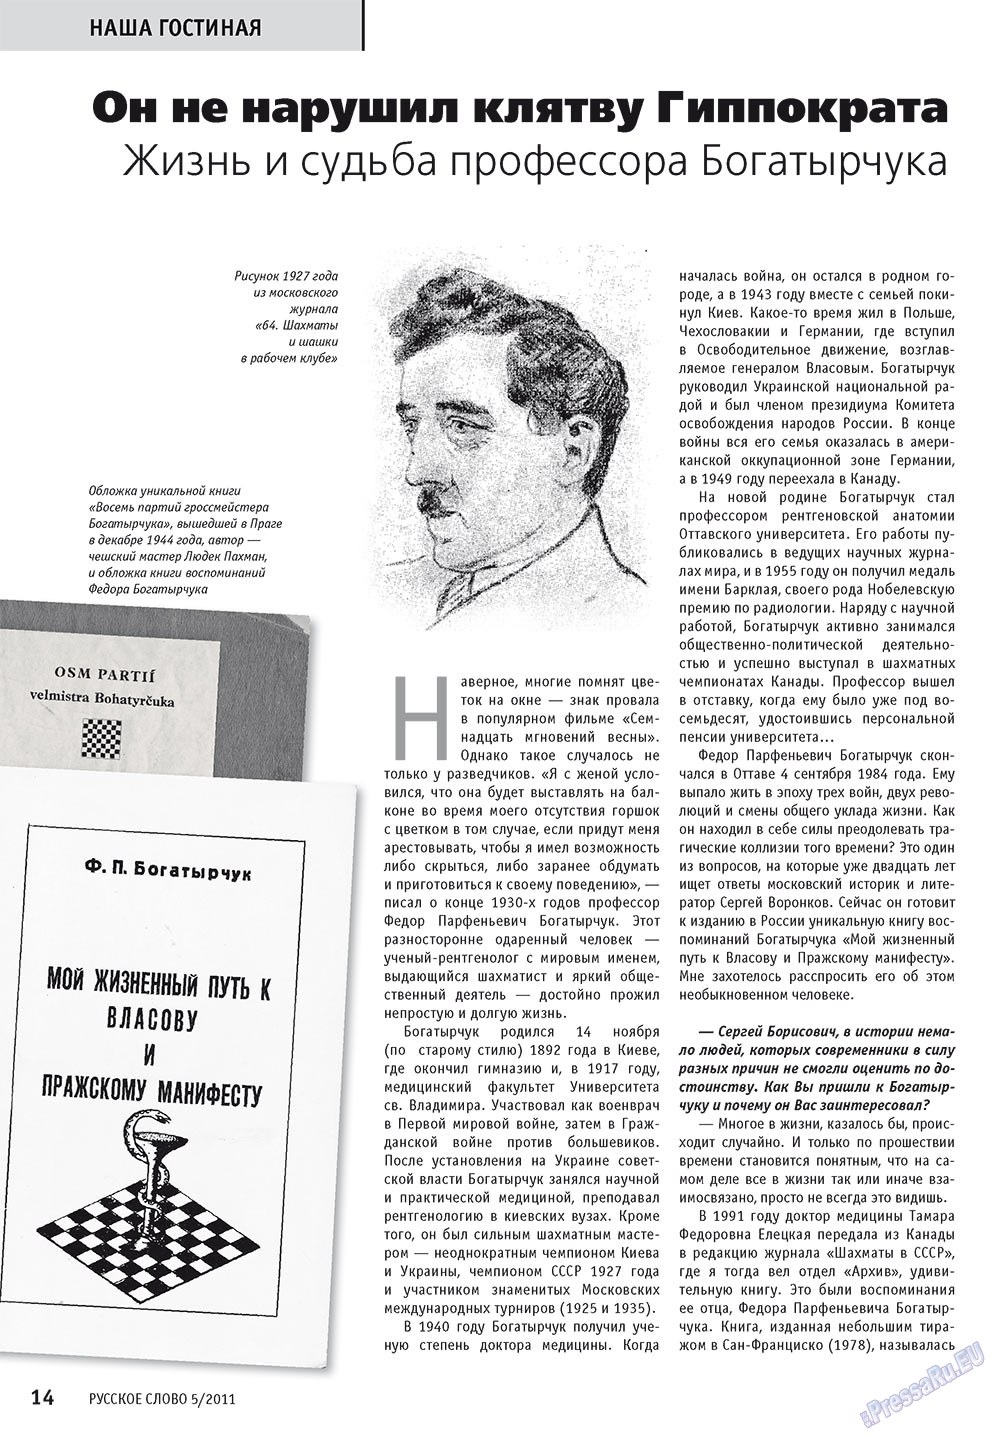 Русское слово, журнал. 2011 №5 стр.16